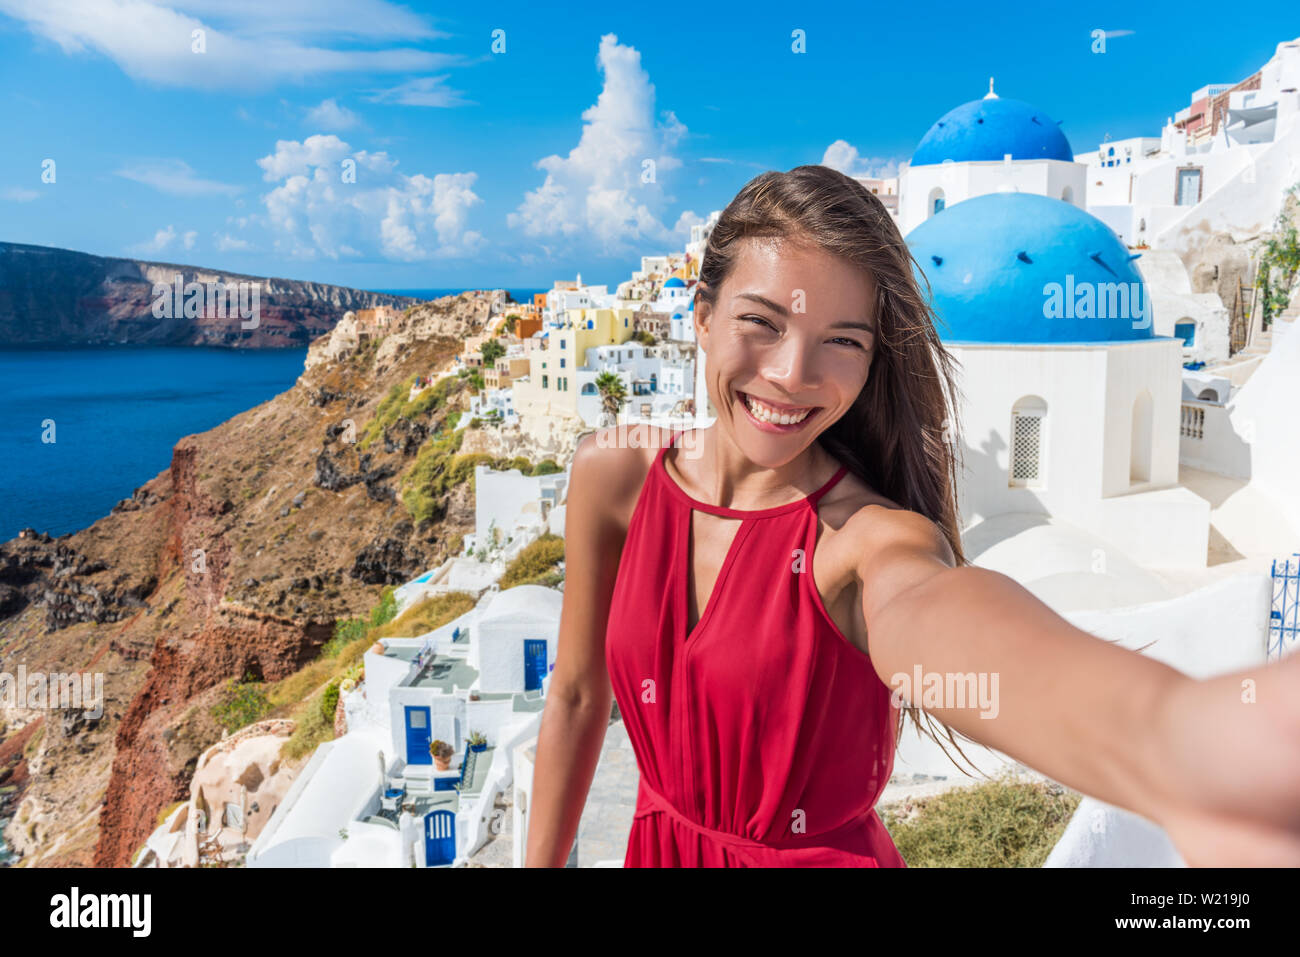 Europa reisen selfie asiatische Frau in das Dorf Oia, Santorini. Cute glücklich lächelnde Tourist girl Self-portrait Bild mit Smartphone im Sommer Urlaub in bekannten europäischen Ziel, Griechenland. Stockfoto